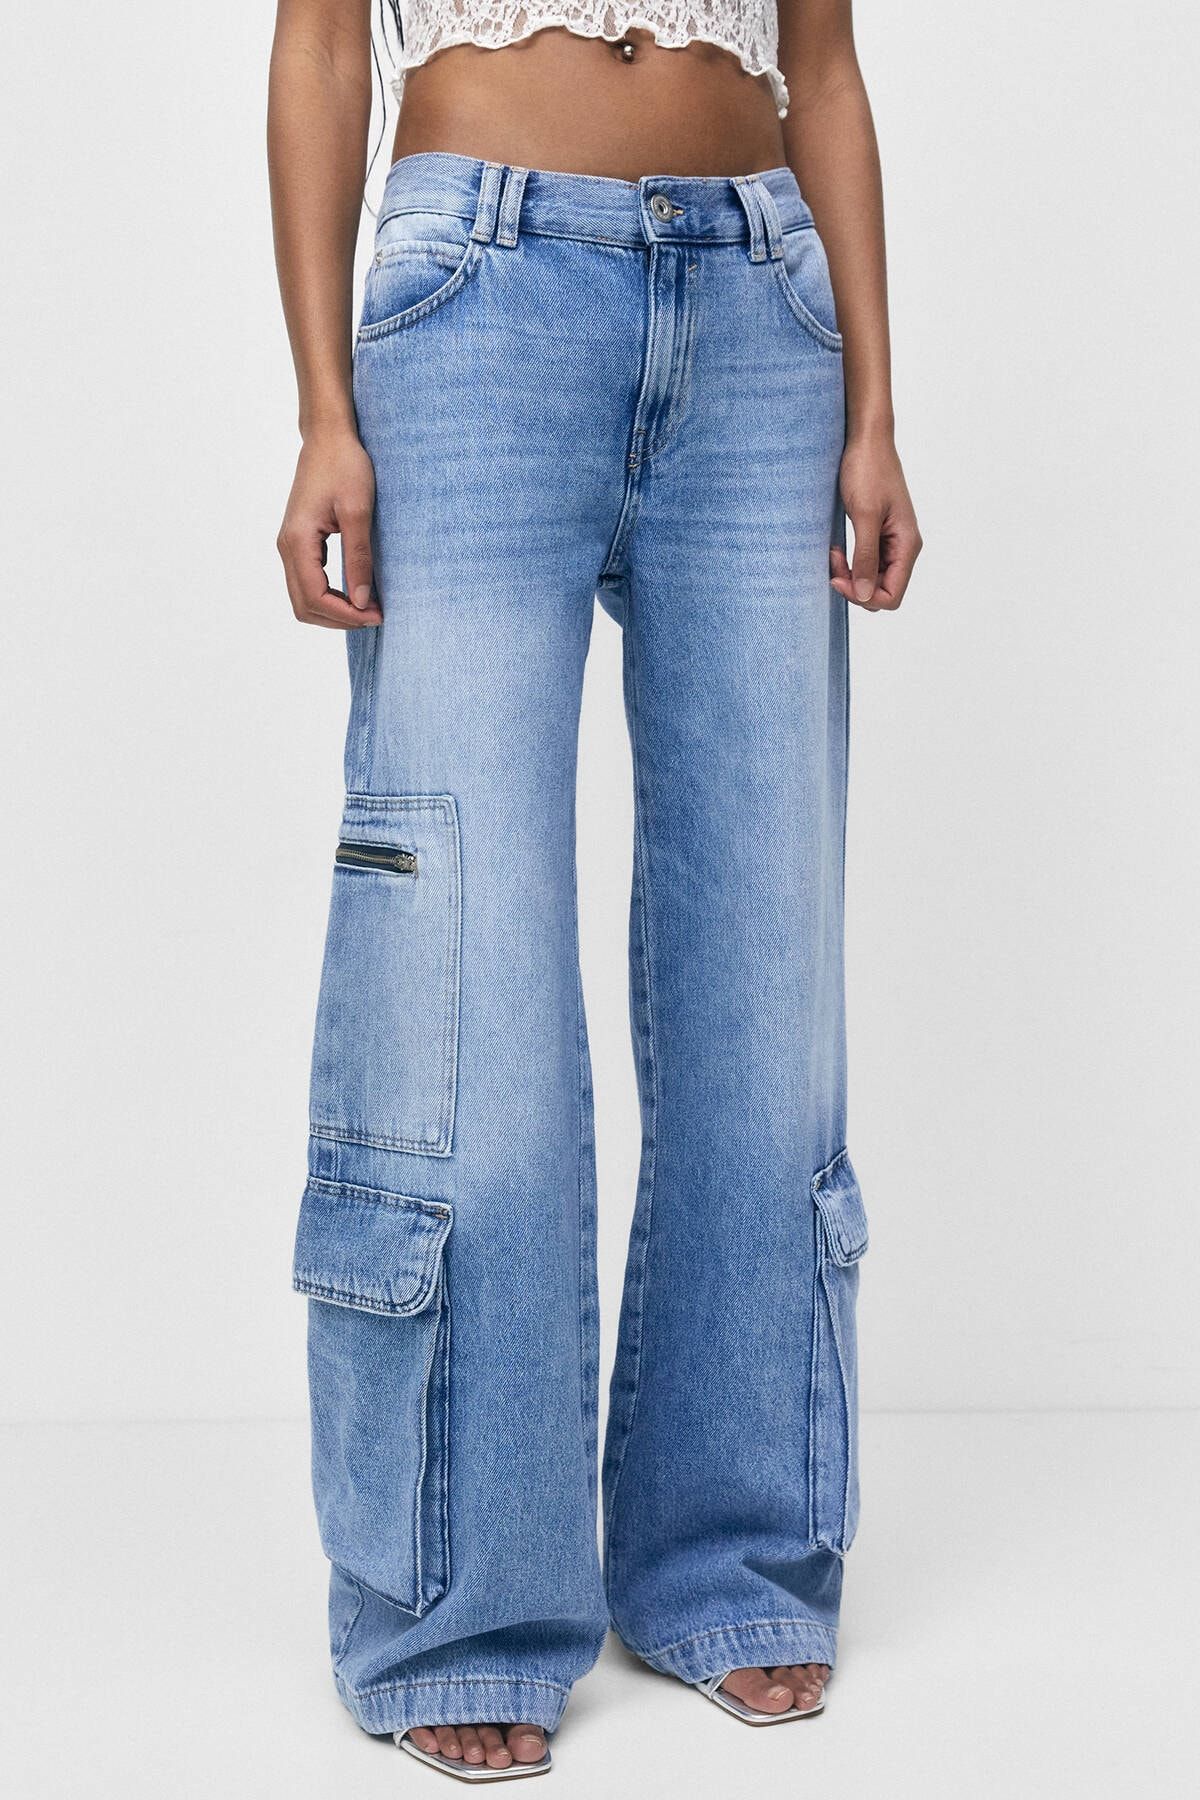 شلوار جین آبی طرح جیب پاکتی مدل گشاد طرحدار زنانه پول اند بیر Pull & Bear (برند اسپانیا)